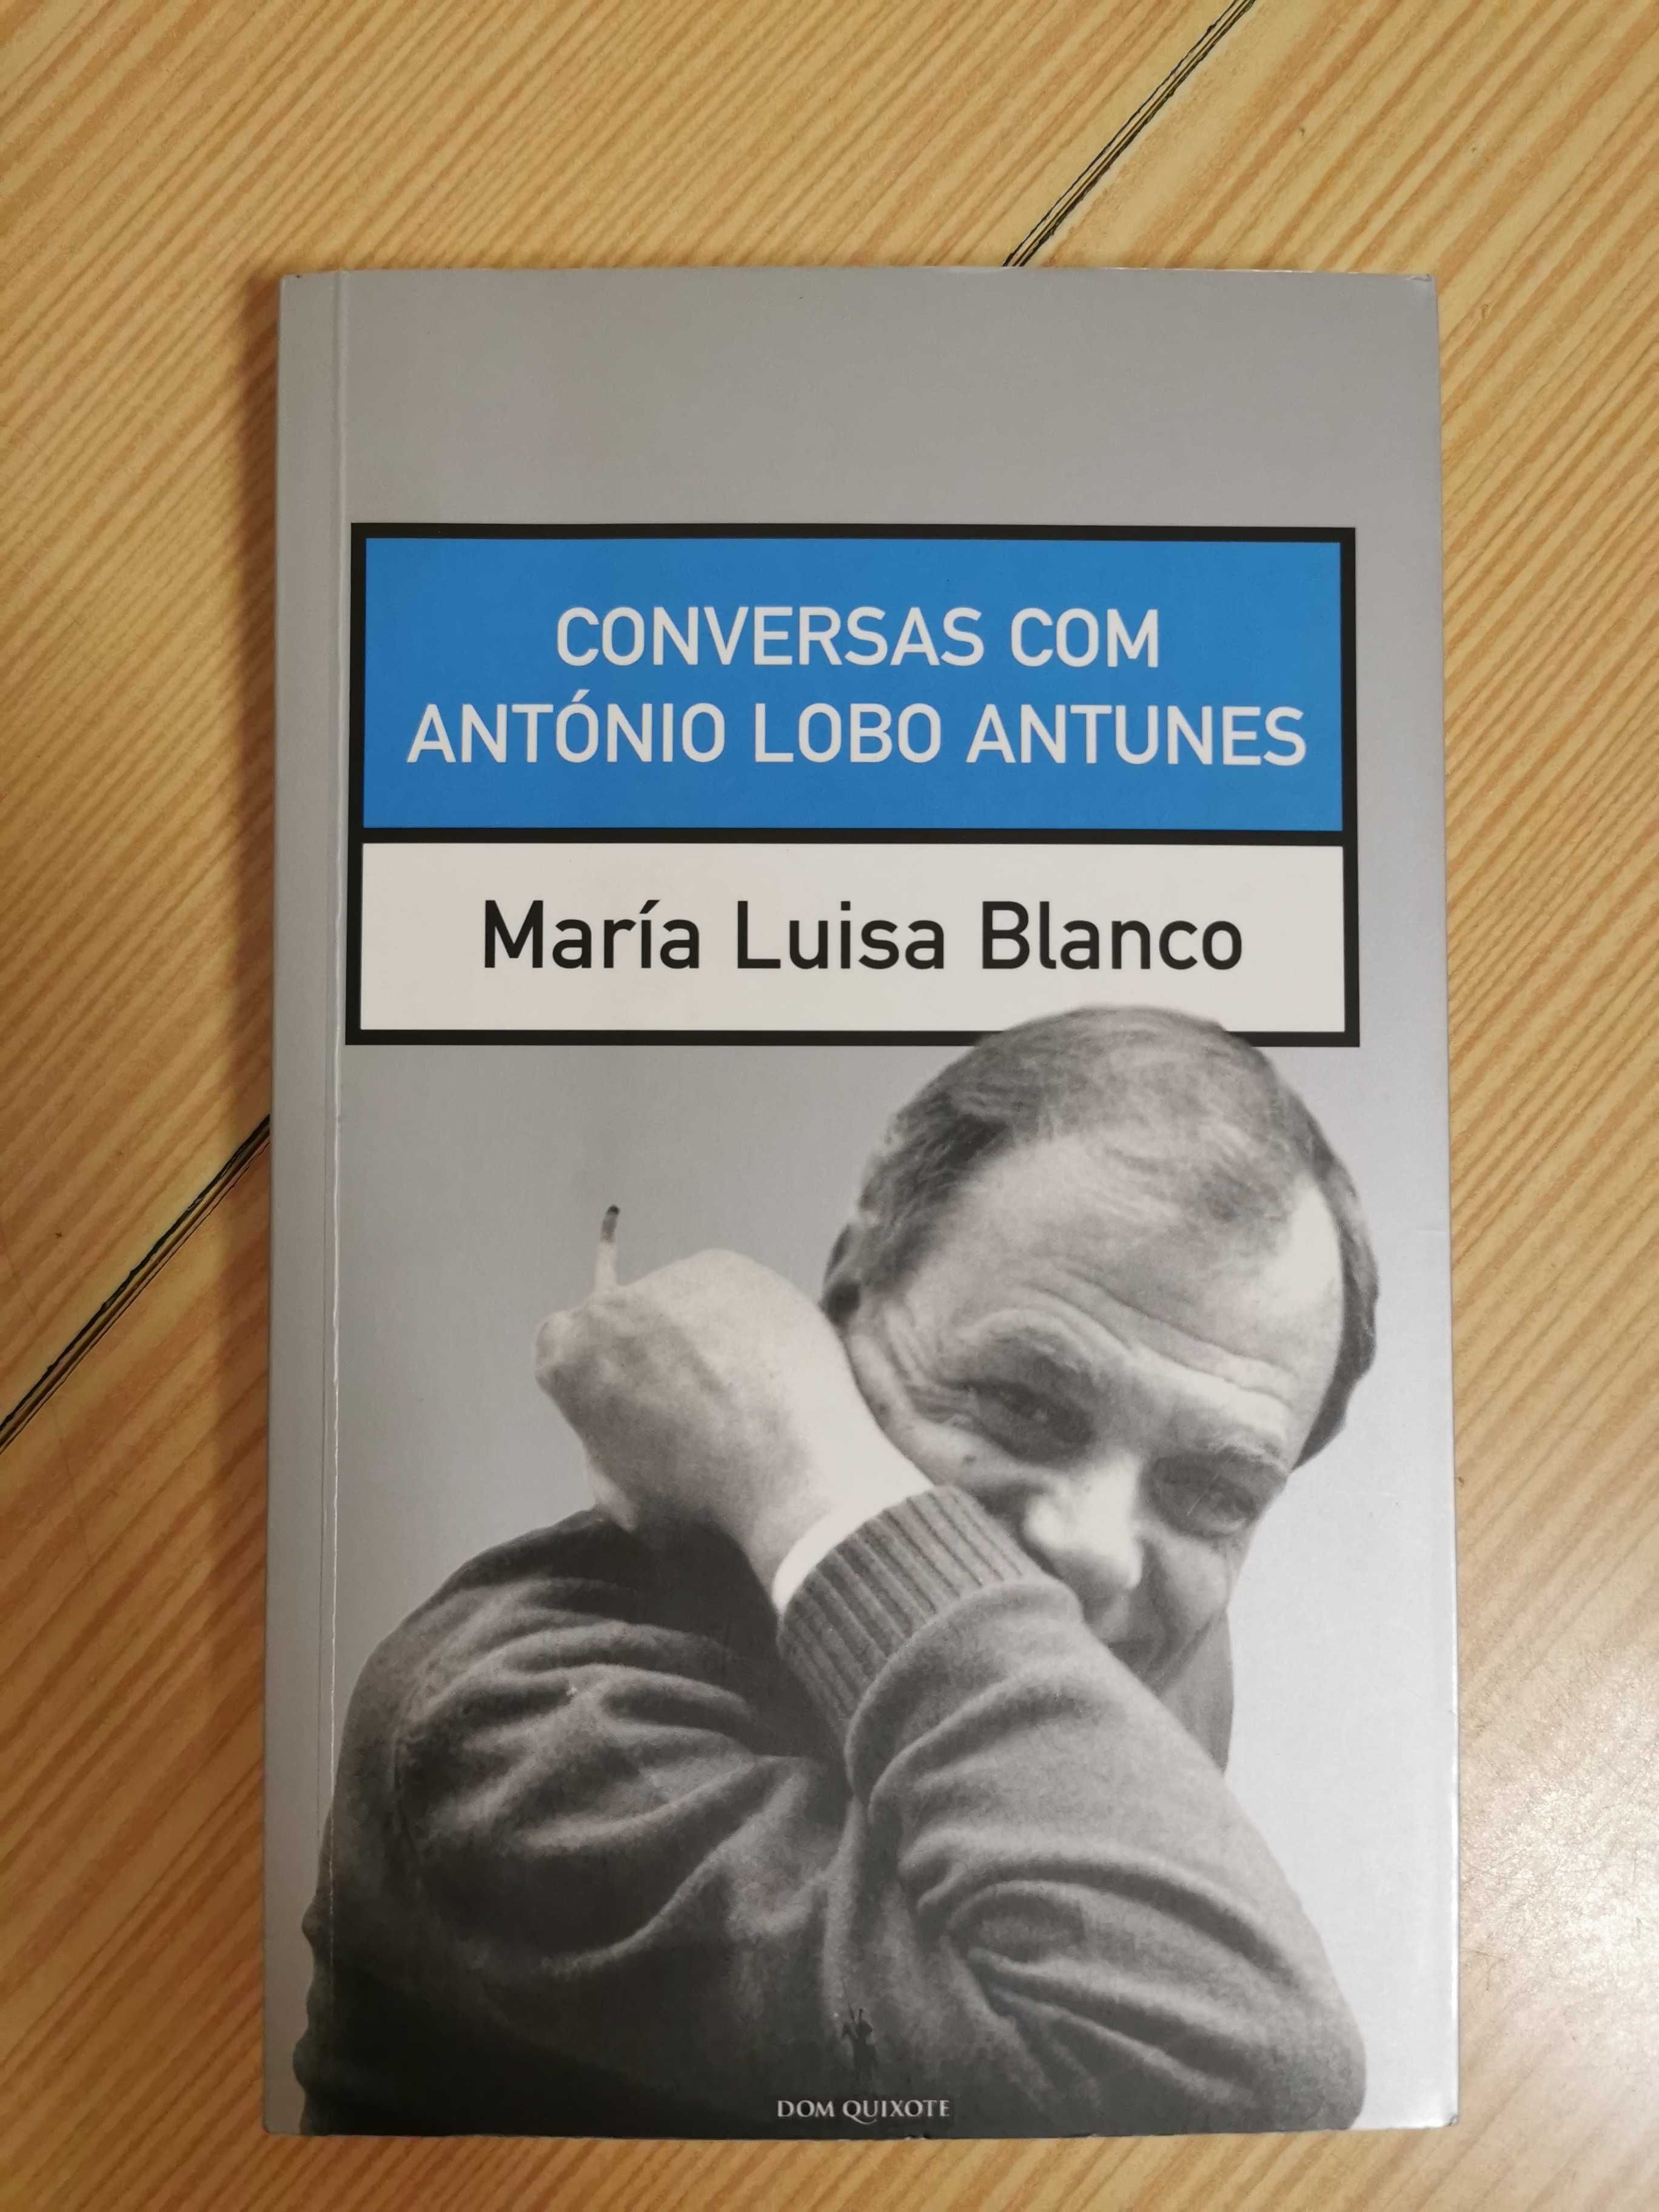 Livros sobre António Lobo Antunes